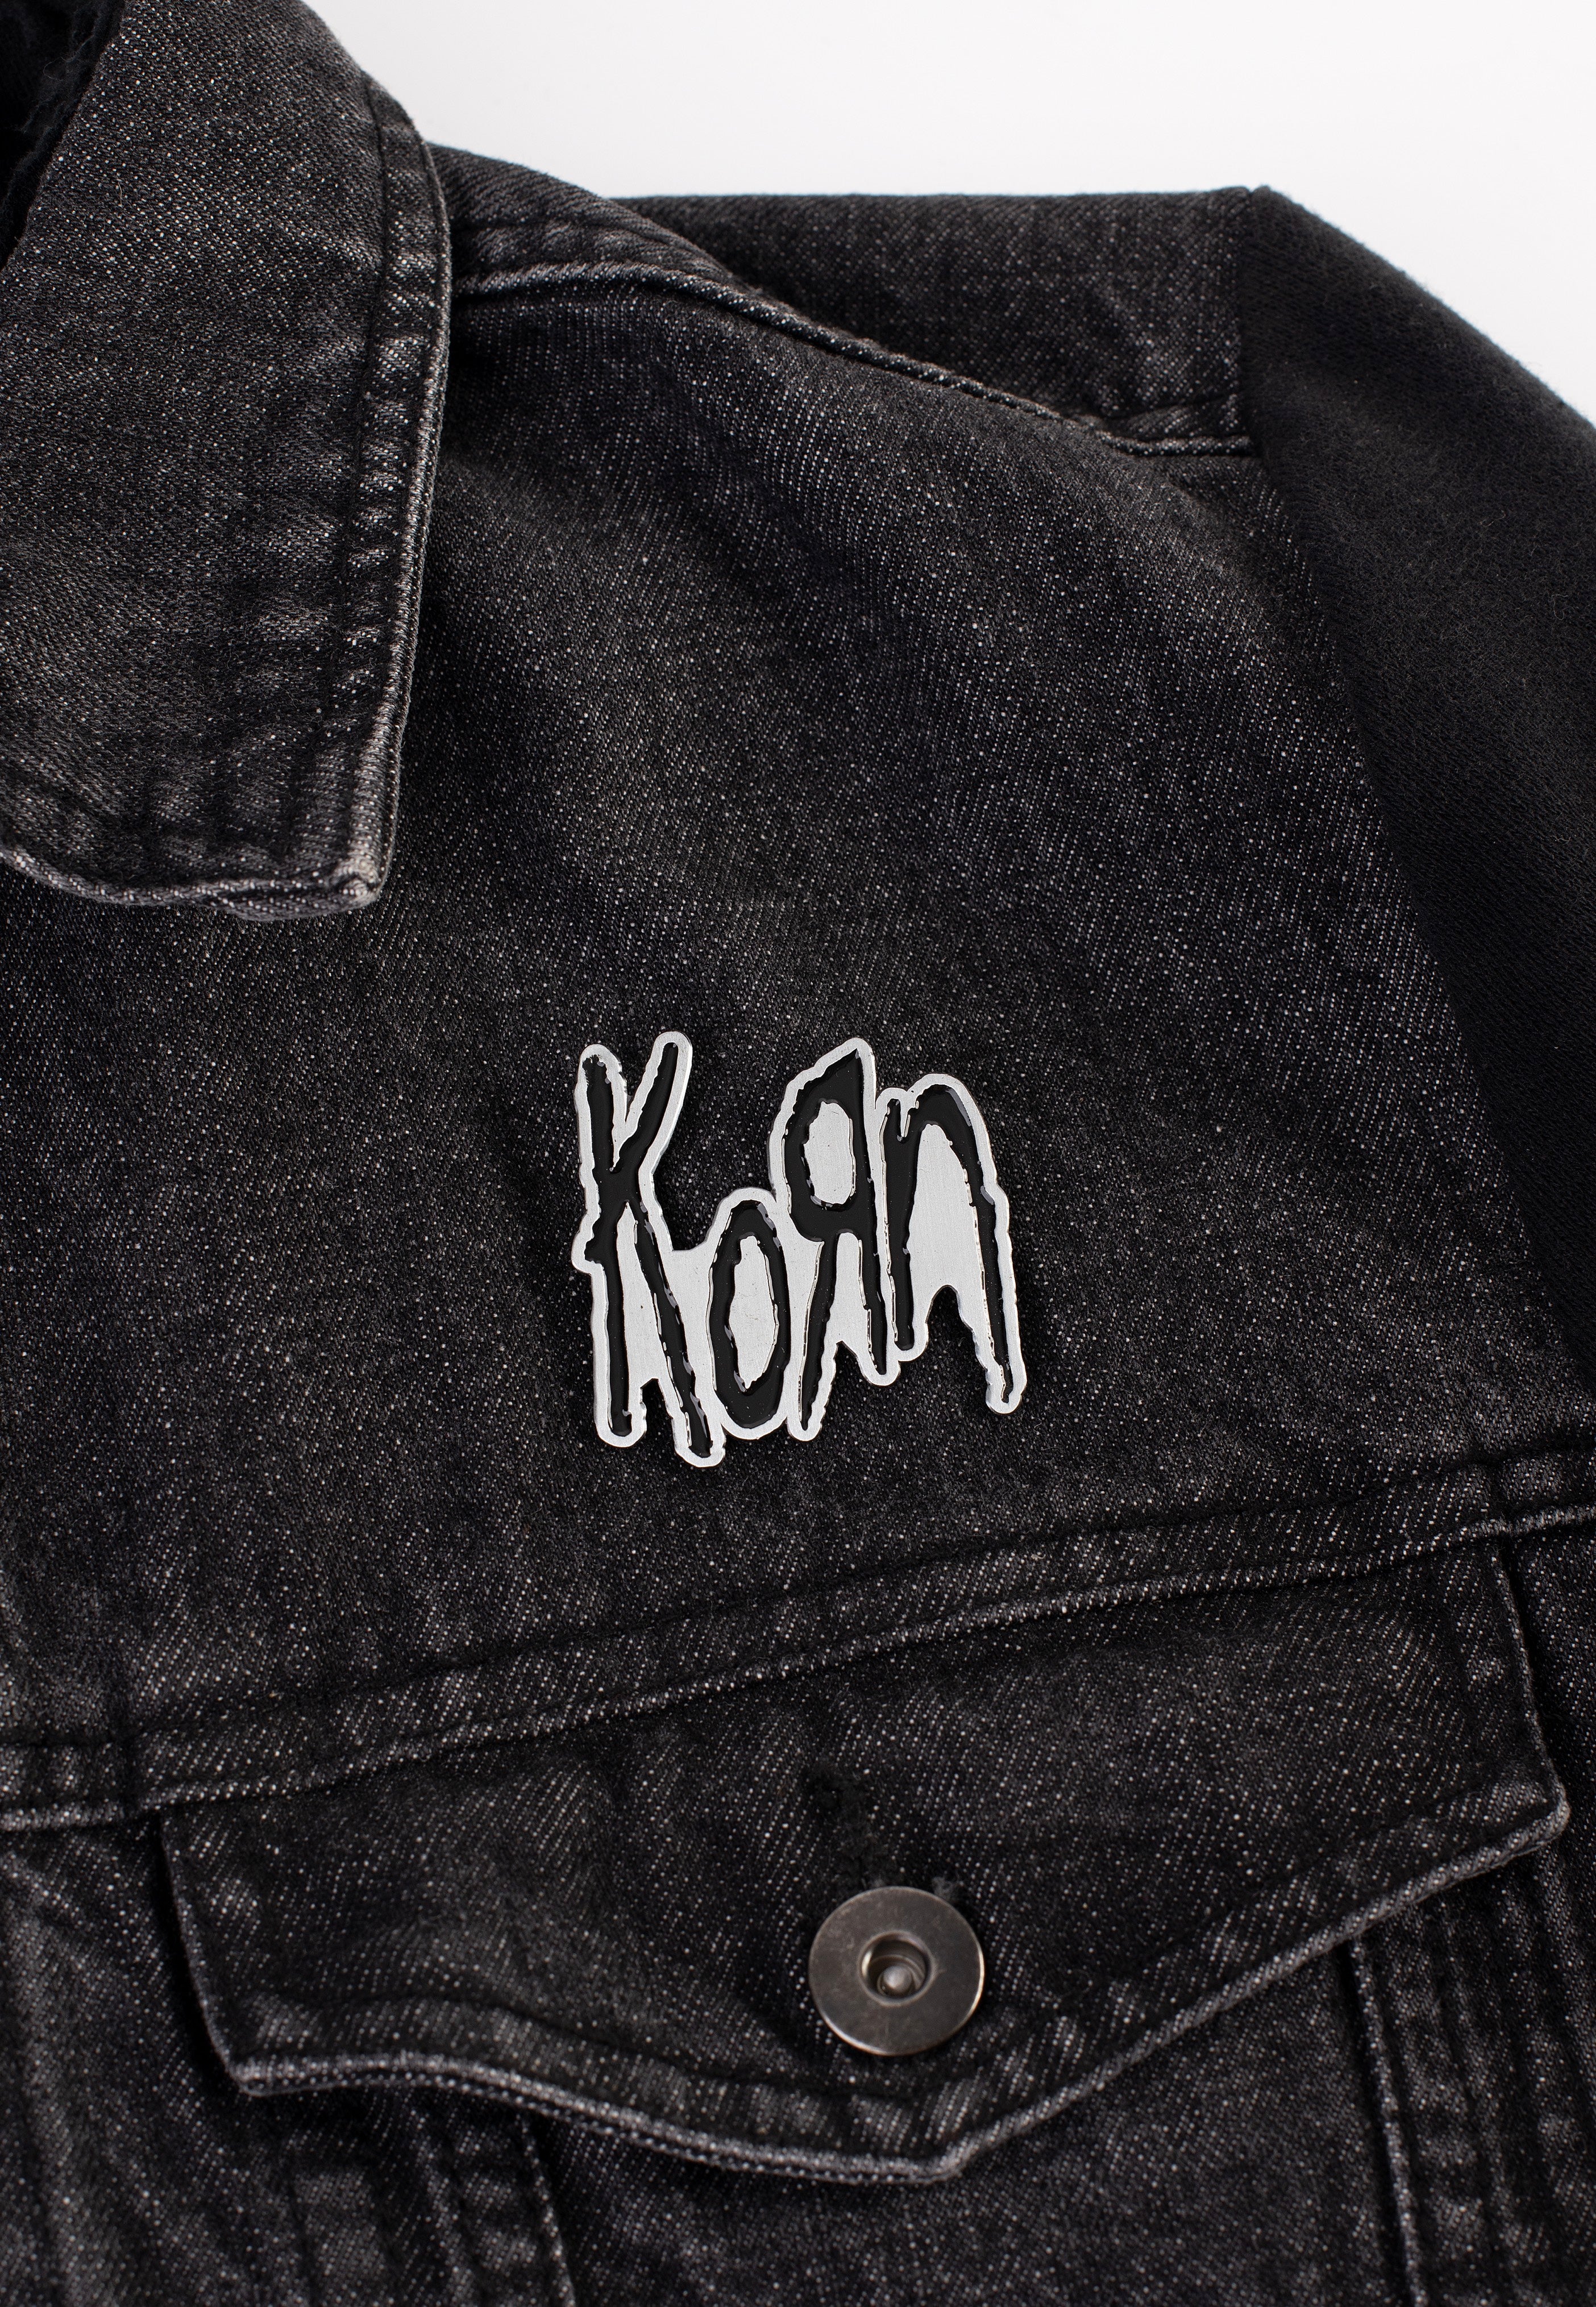 Korn - Logo - Pin